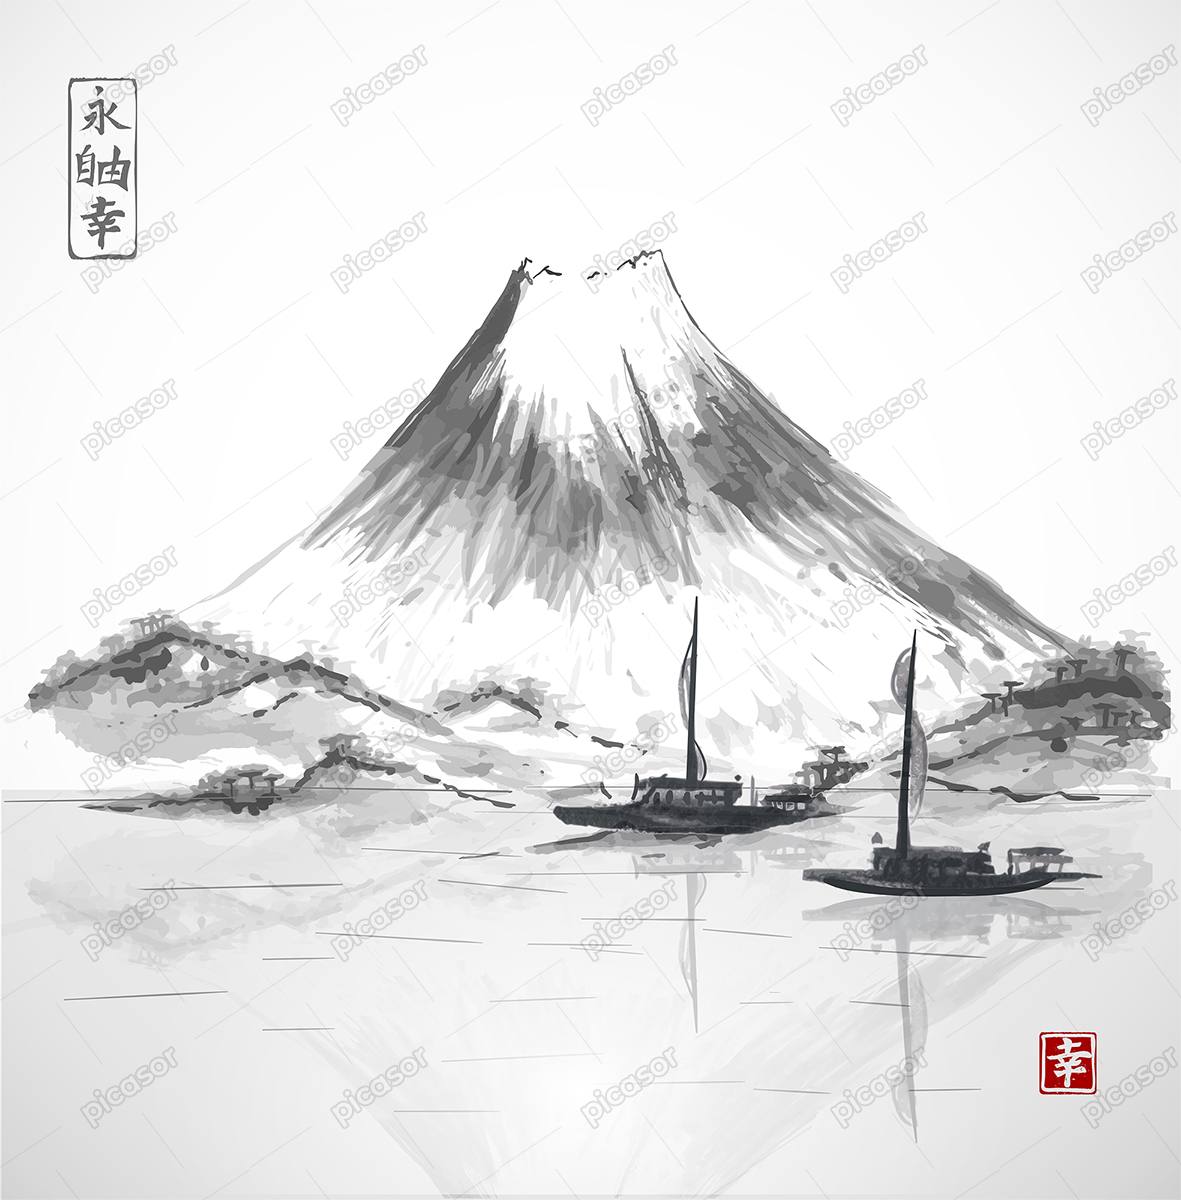 وکتور نقاشی کوه فوجی یاما ژاپن با قایقهای روی دریاچه،هنر نقاشی آبرنگ ژاپنی